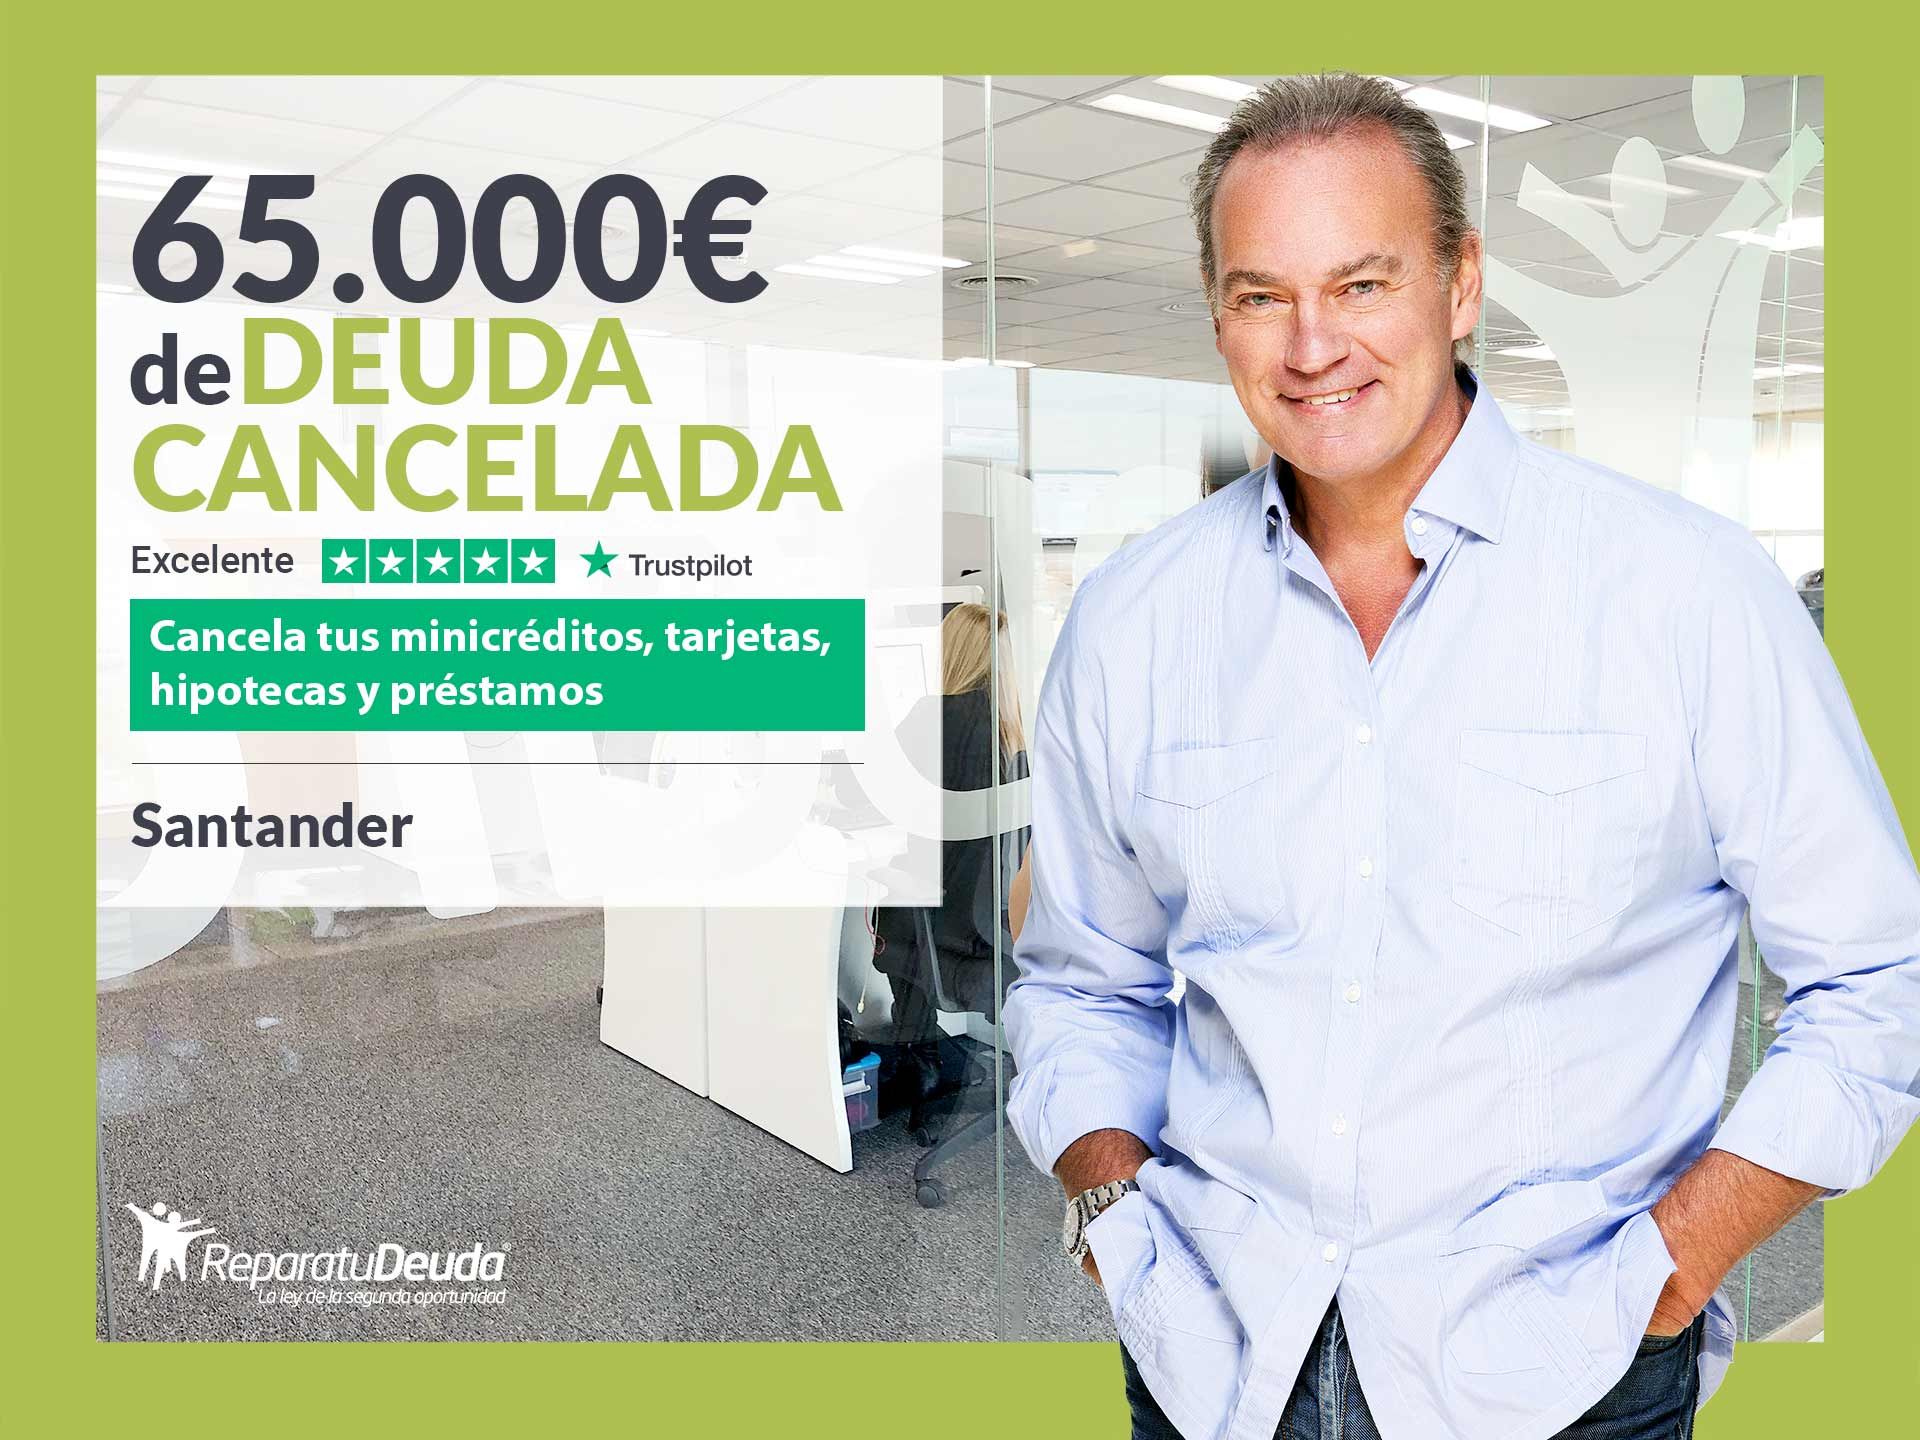 Repara tu Deuda Abogados cancela 65.000? en Santander (Cantabria) con la Ley de Segunda Oportunidad